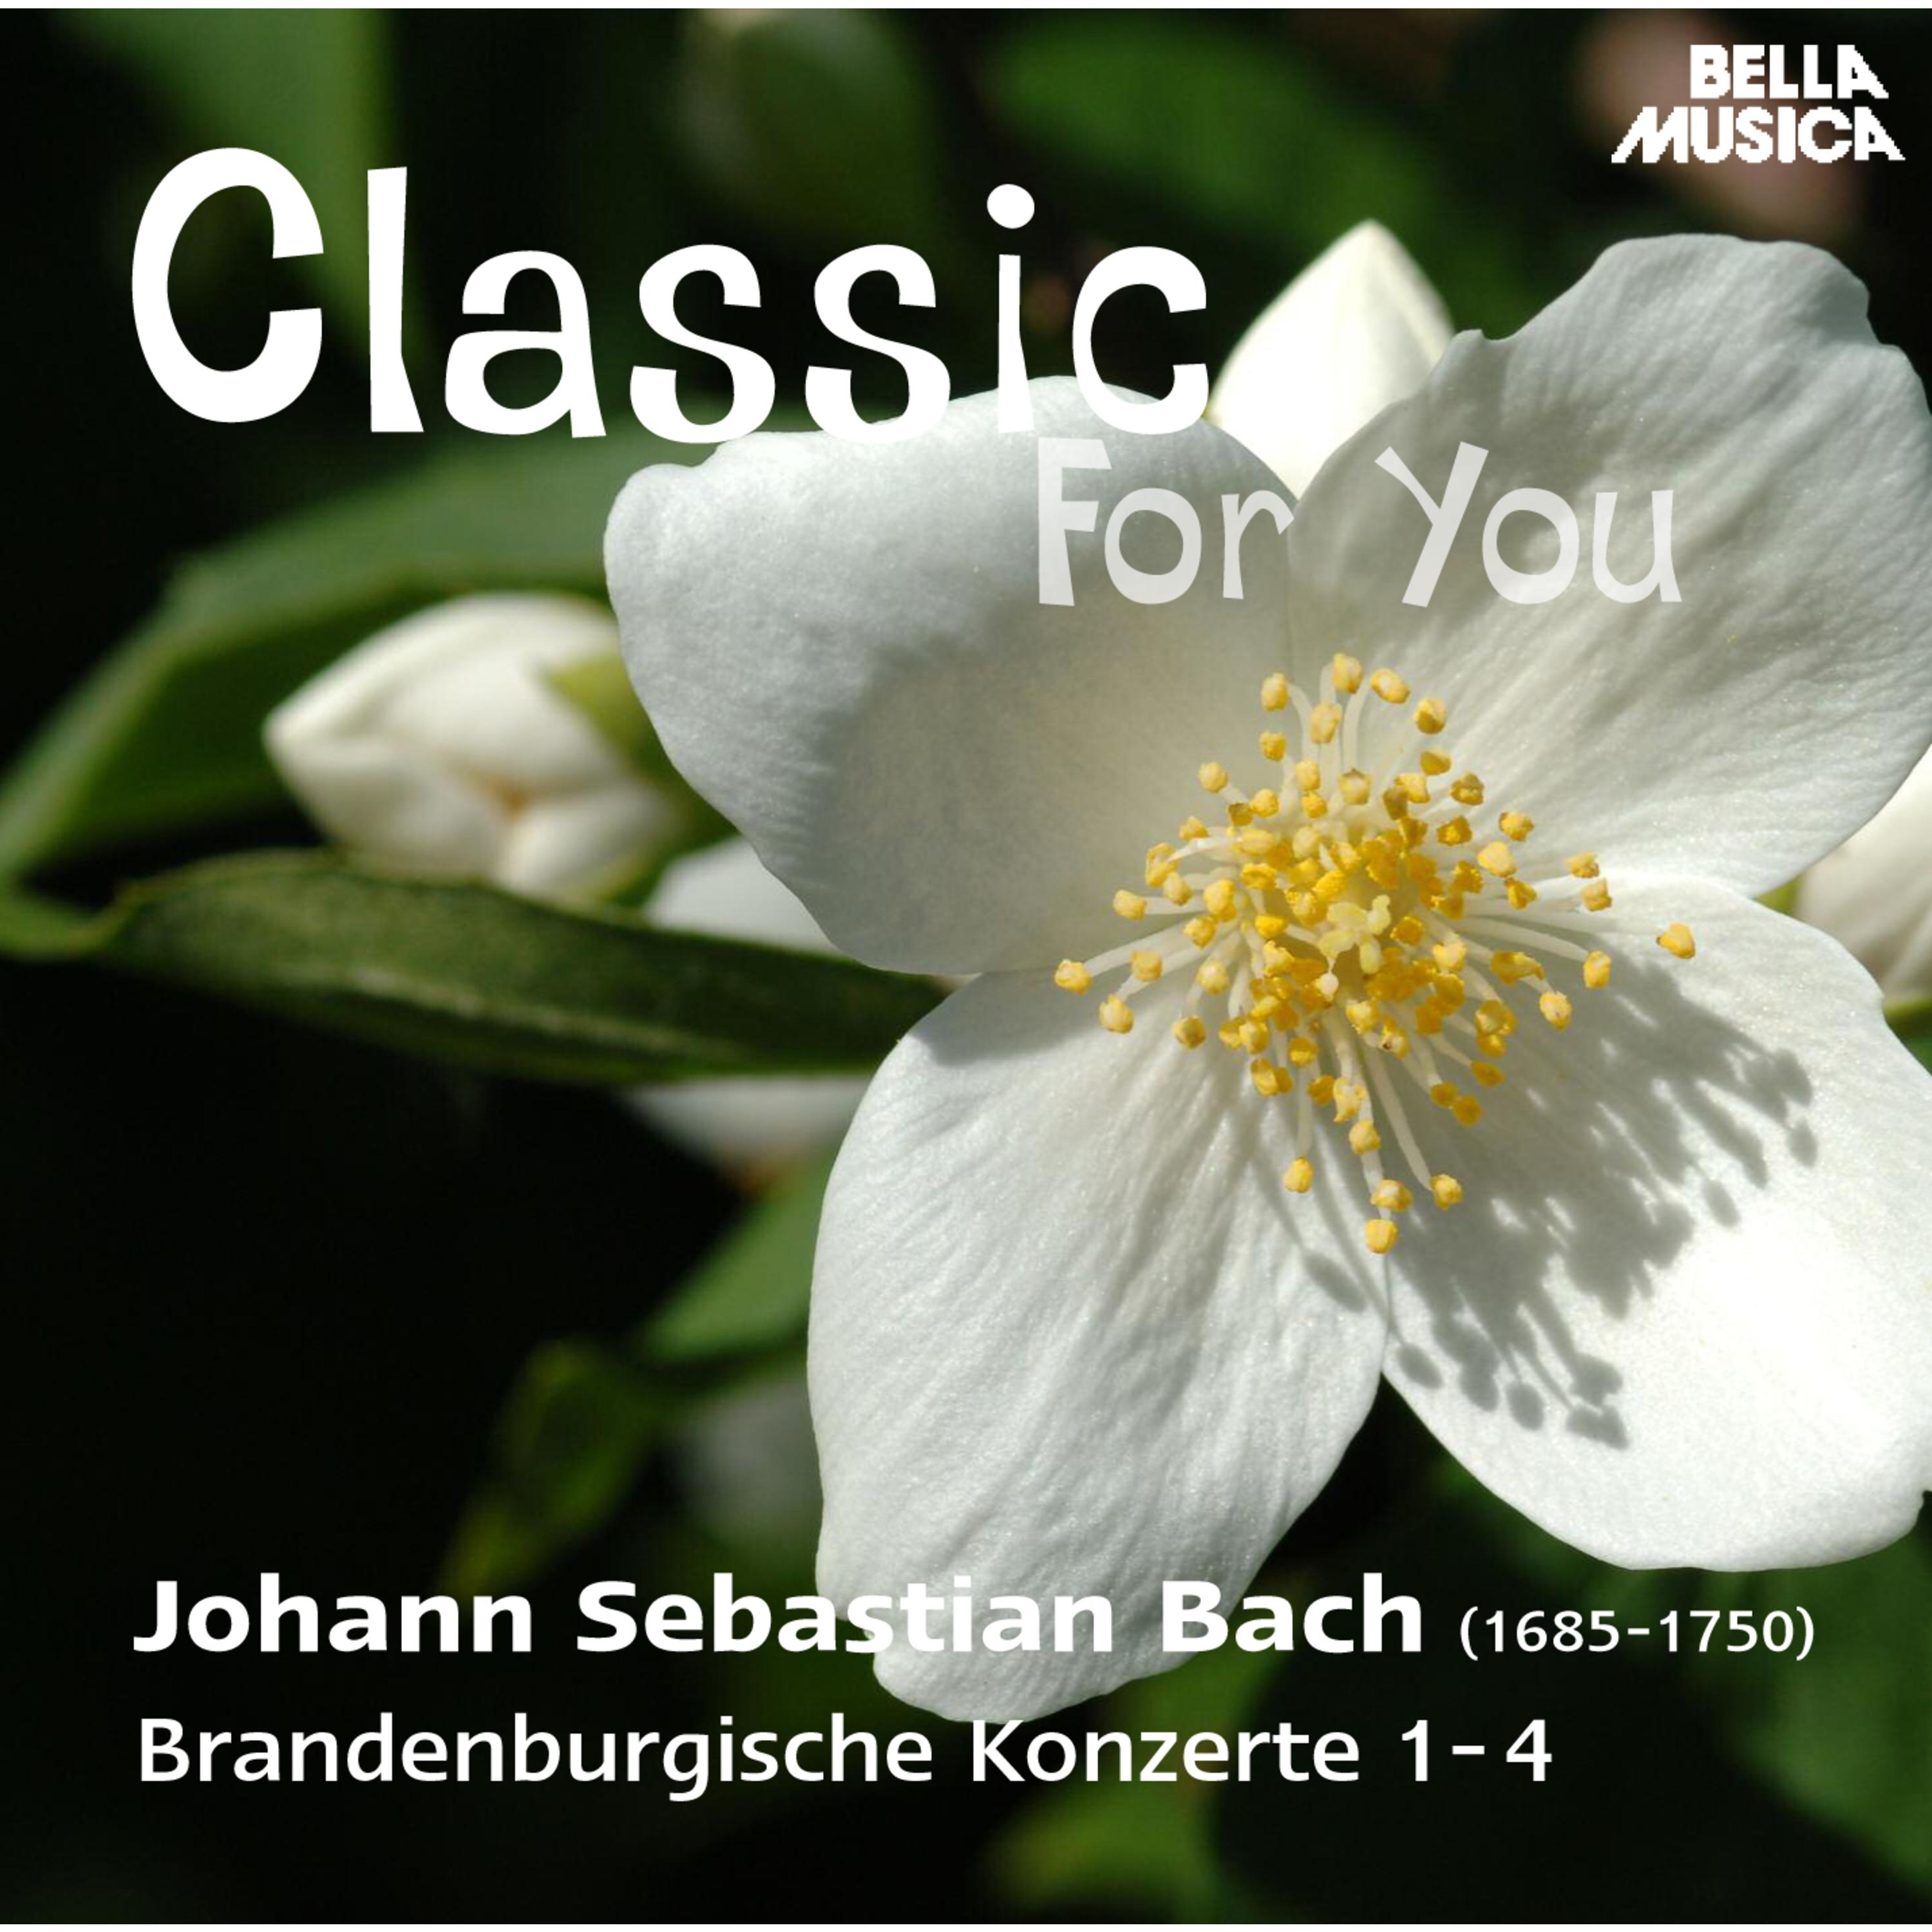 Brandenburgisches Konzert in G Major, BWV 1049, No. 4: II. Andante